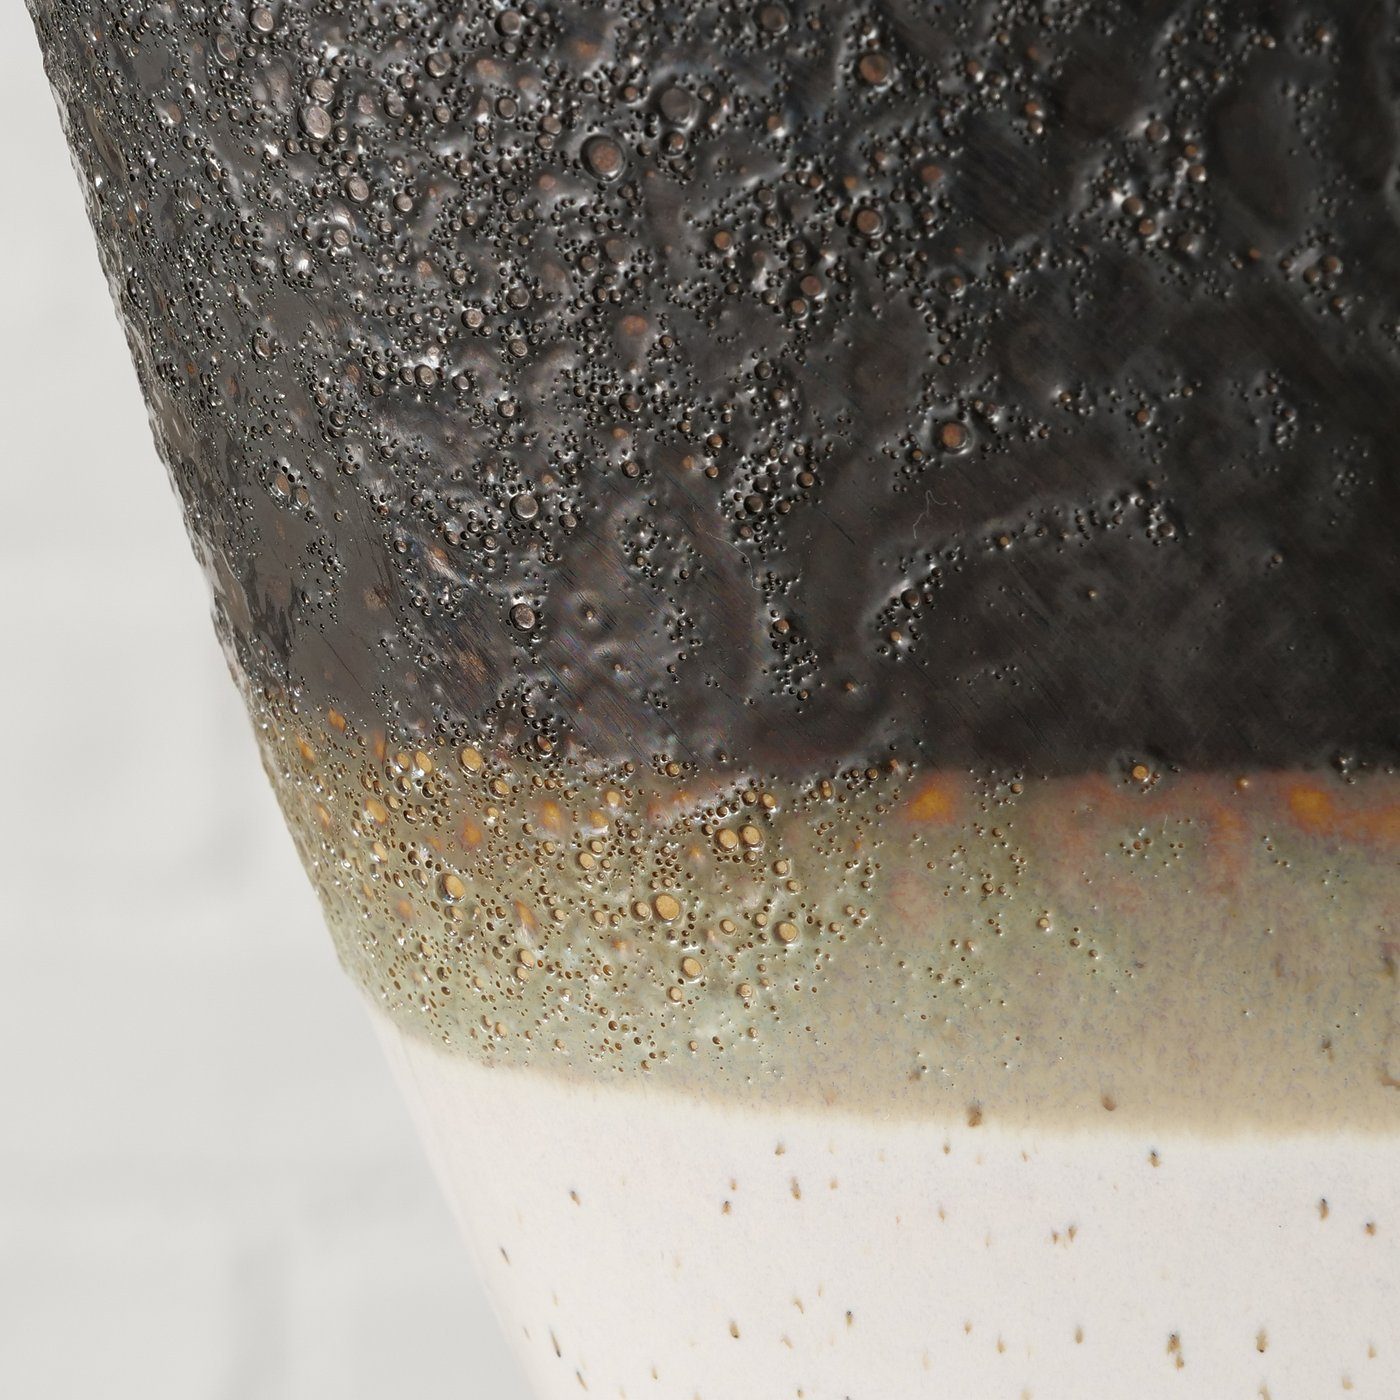 aus "Lamuna" Dekovase BOLTZE Vase Keramik schwarz/weiß H26cm, in